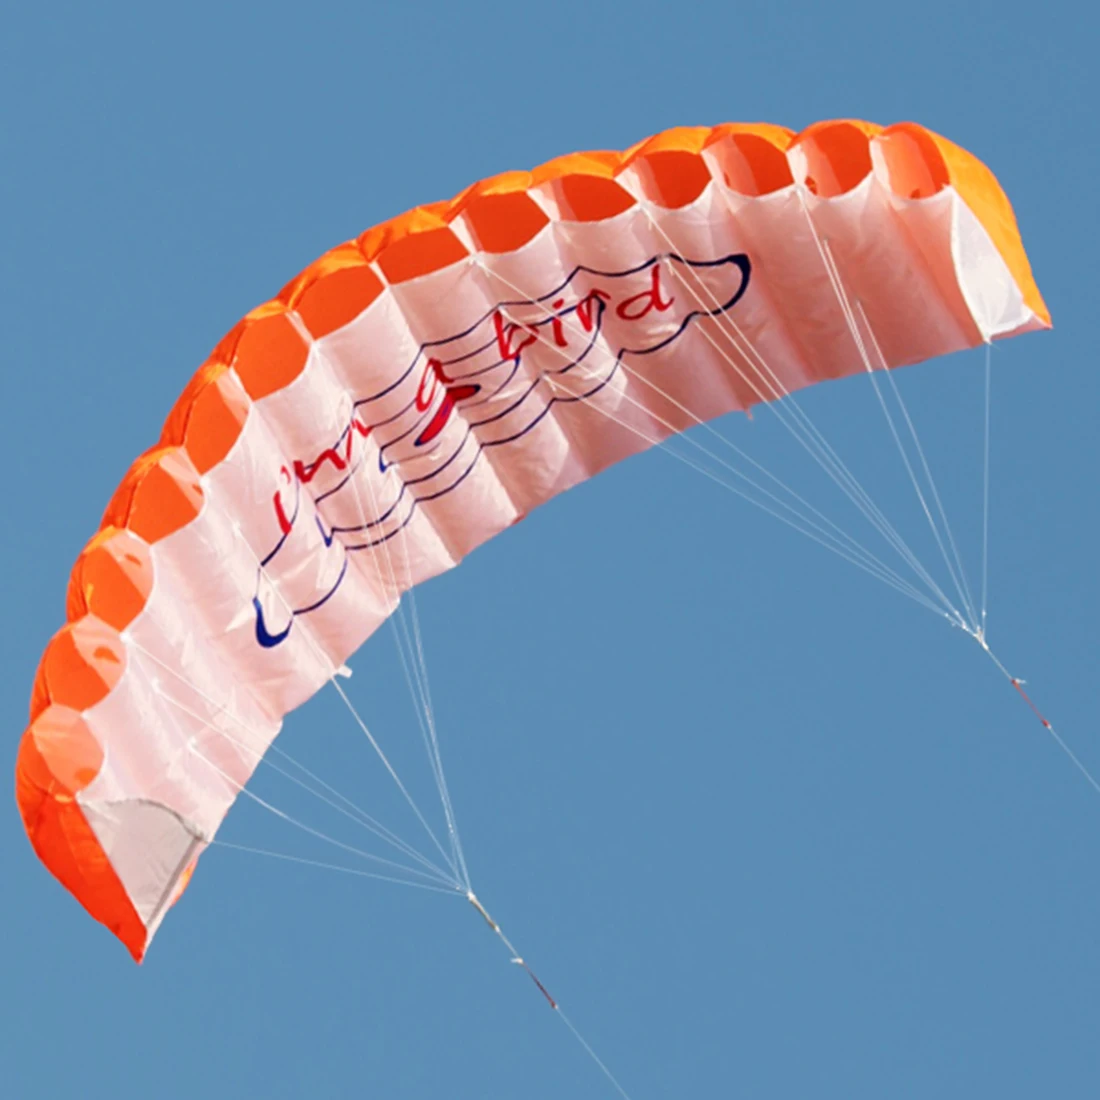 1,4 м двойная линия питания воздушный змей параплан парашютный воздушный змей спортивная игрушка Семья Открытый воздушные змеи летающие игрушки для детей Дети синий красный оранжевый